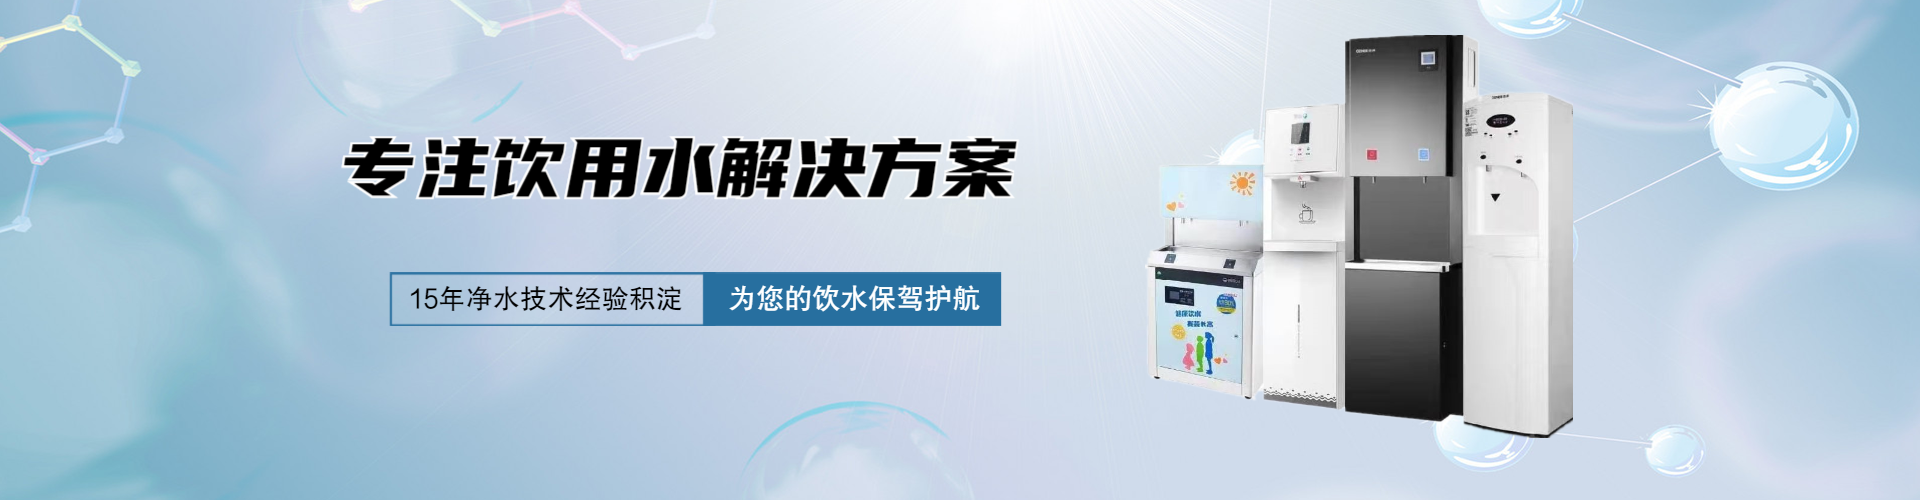 上海涟莹水处理设备有限公司公司介绍